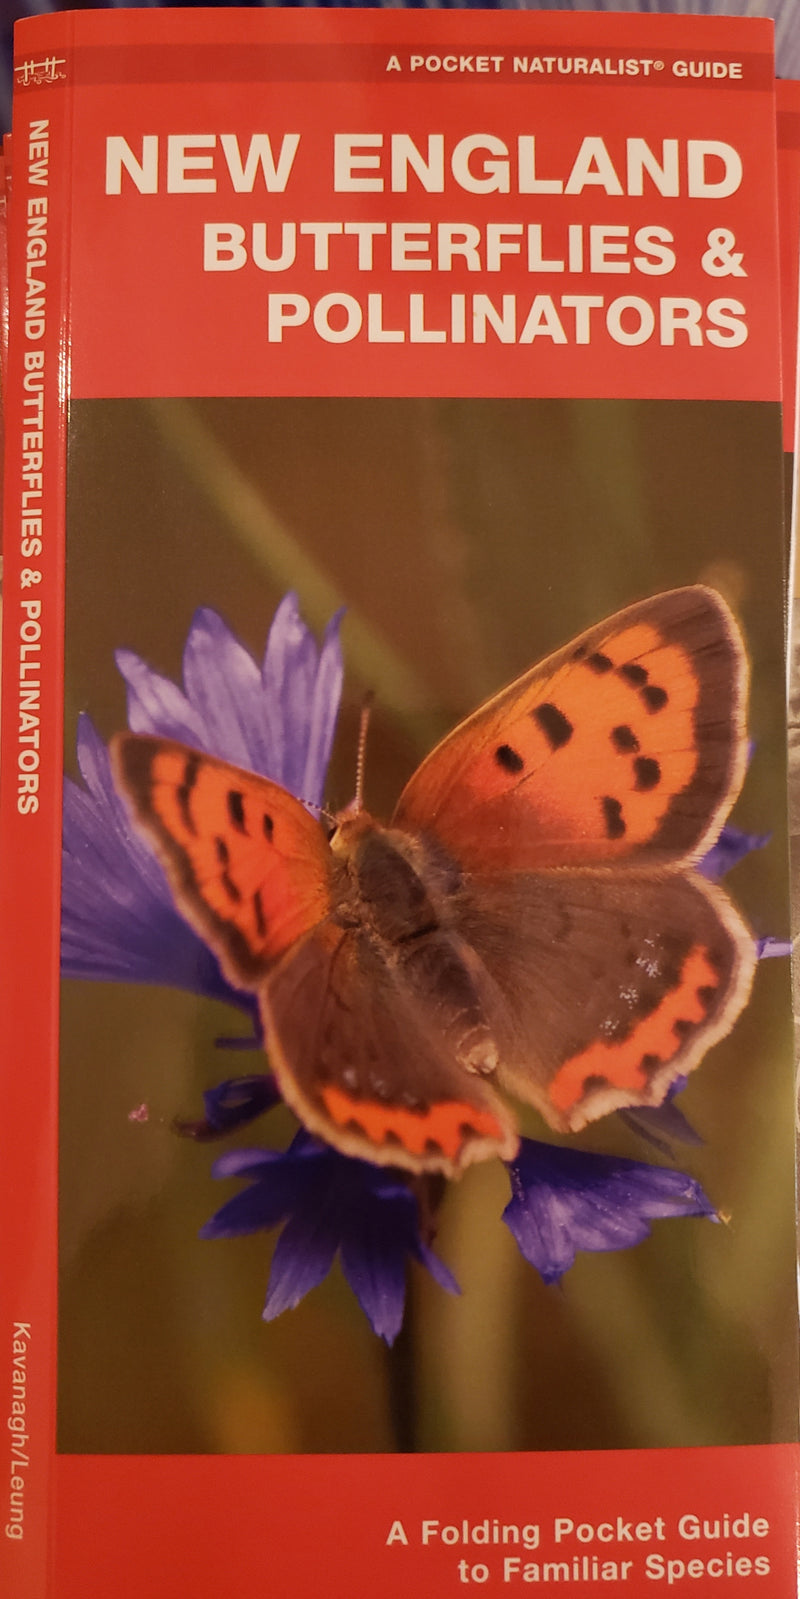 New England Butterflies & Pollinators by Kavanah/Leung